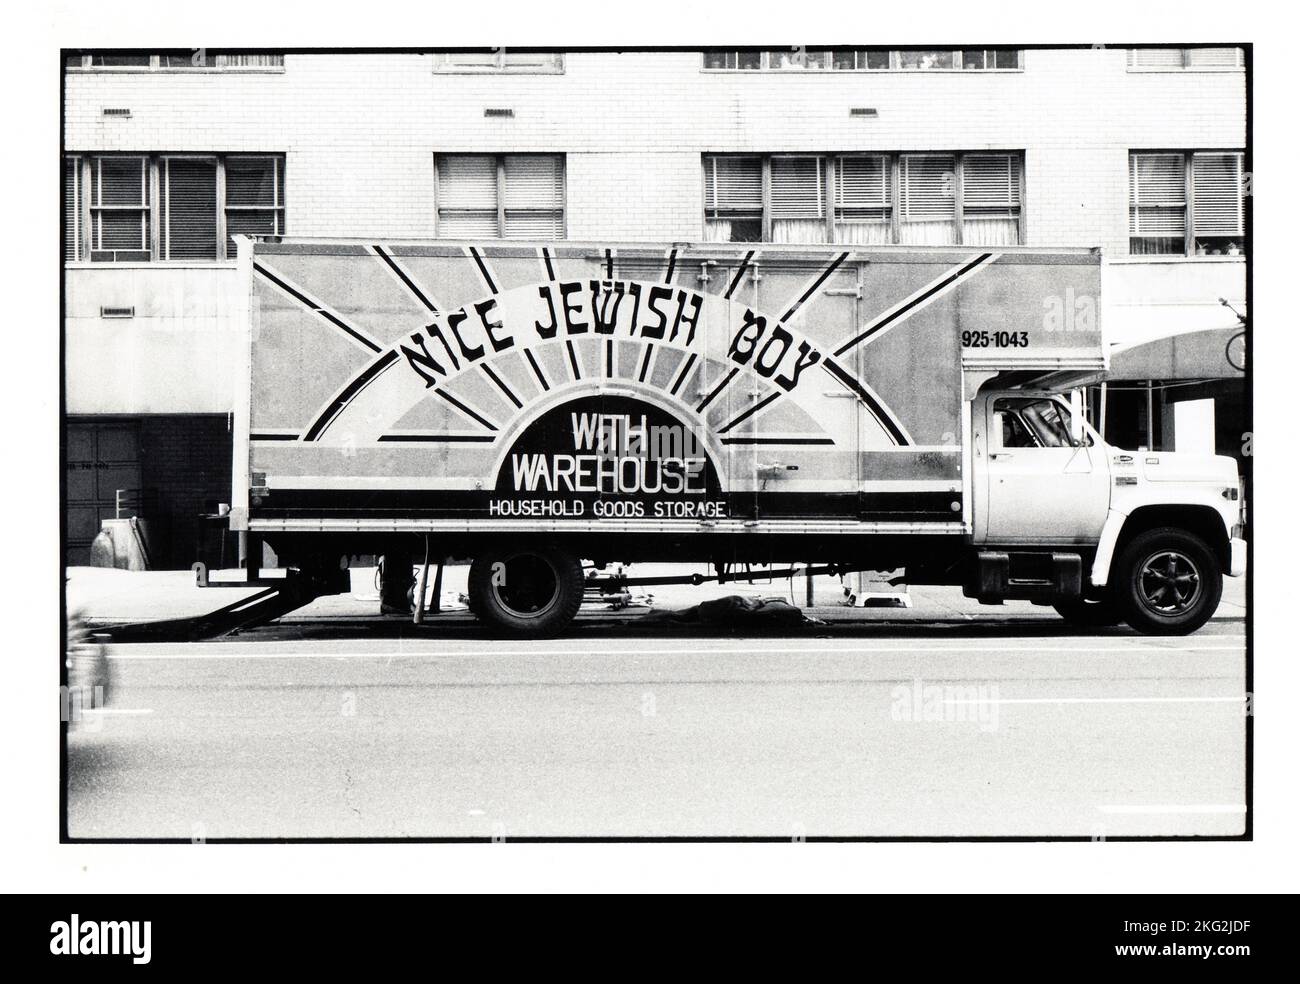 Un camion pour une entreprise en mouvement appelée Nice Jewish Boy avec entrepôt, la police est destinée à ressembler à des lettres hébraïques. Sur le côté Upper West de Manhattan vers 1980. Banque D'Images